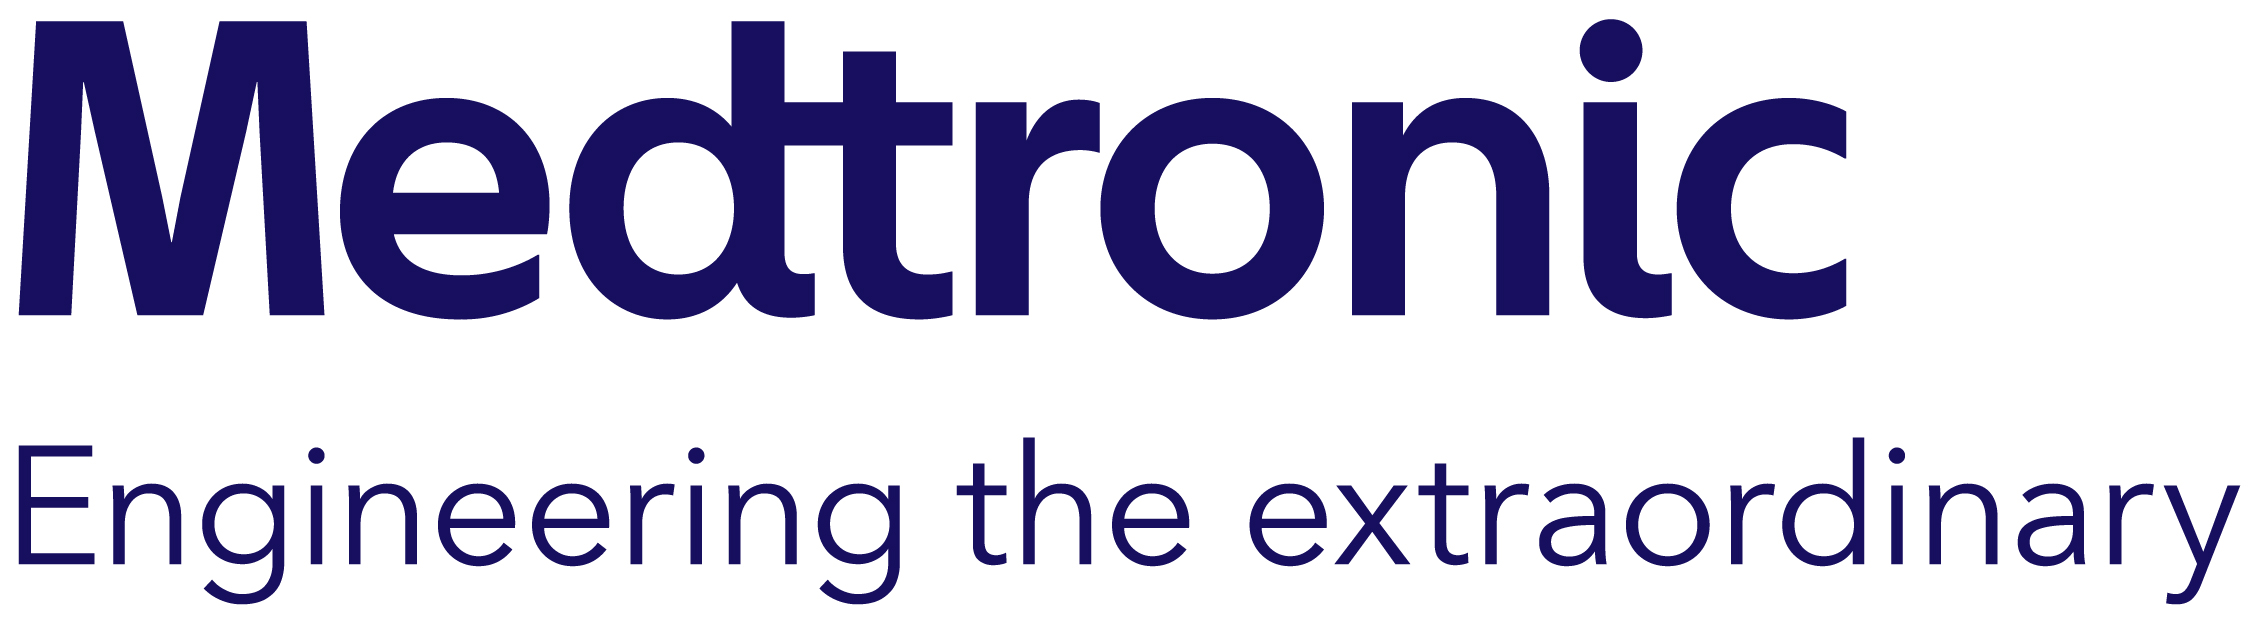 Medtronic logo.jpg